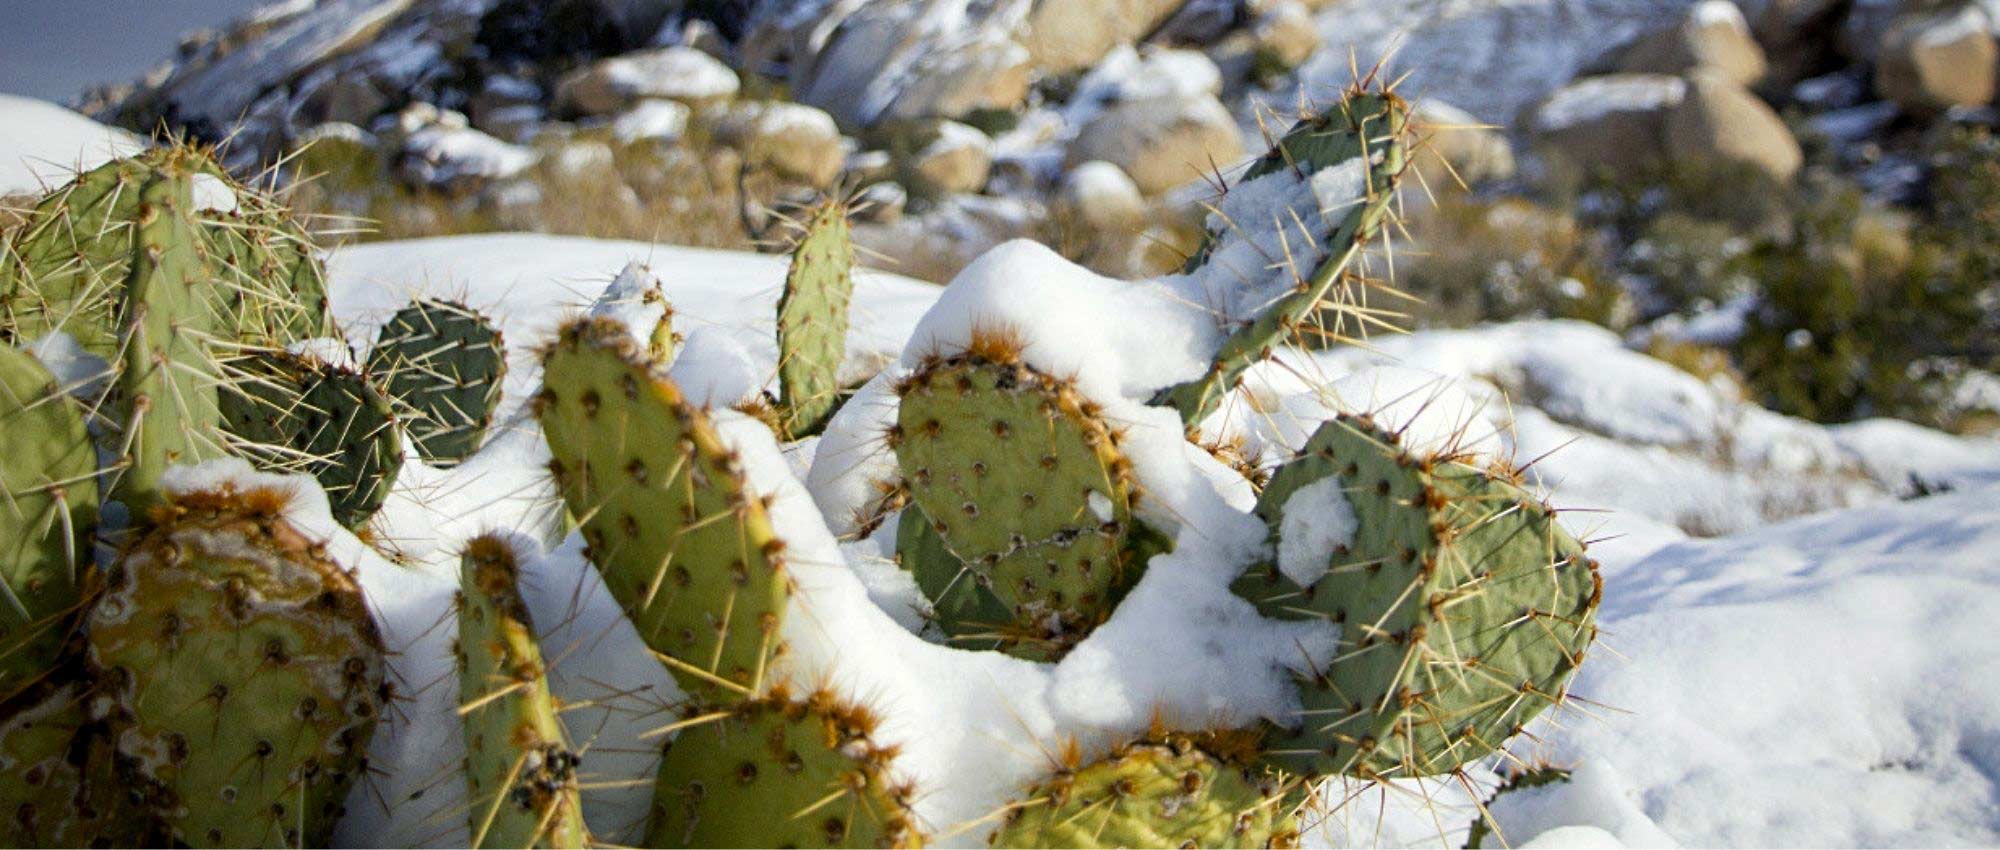 Comment protéger les cactus en hiver ?